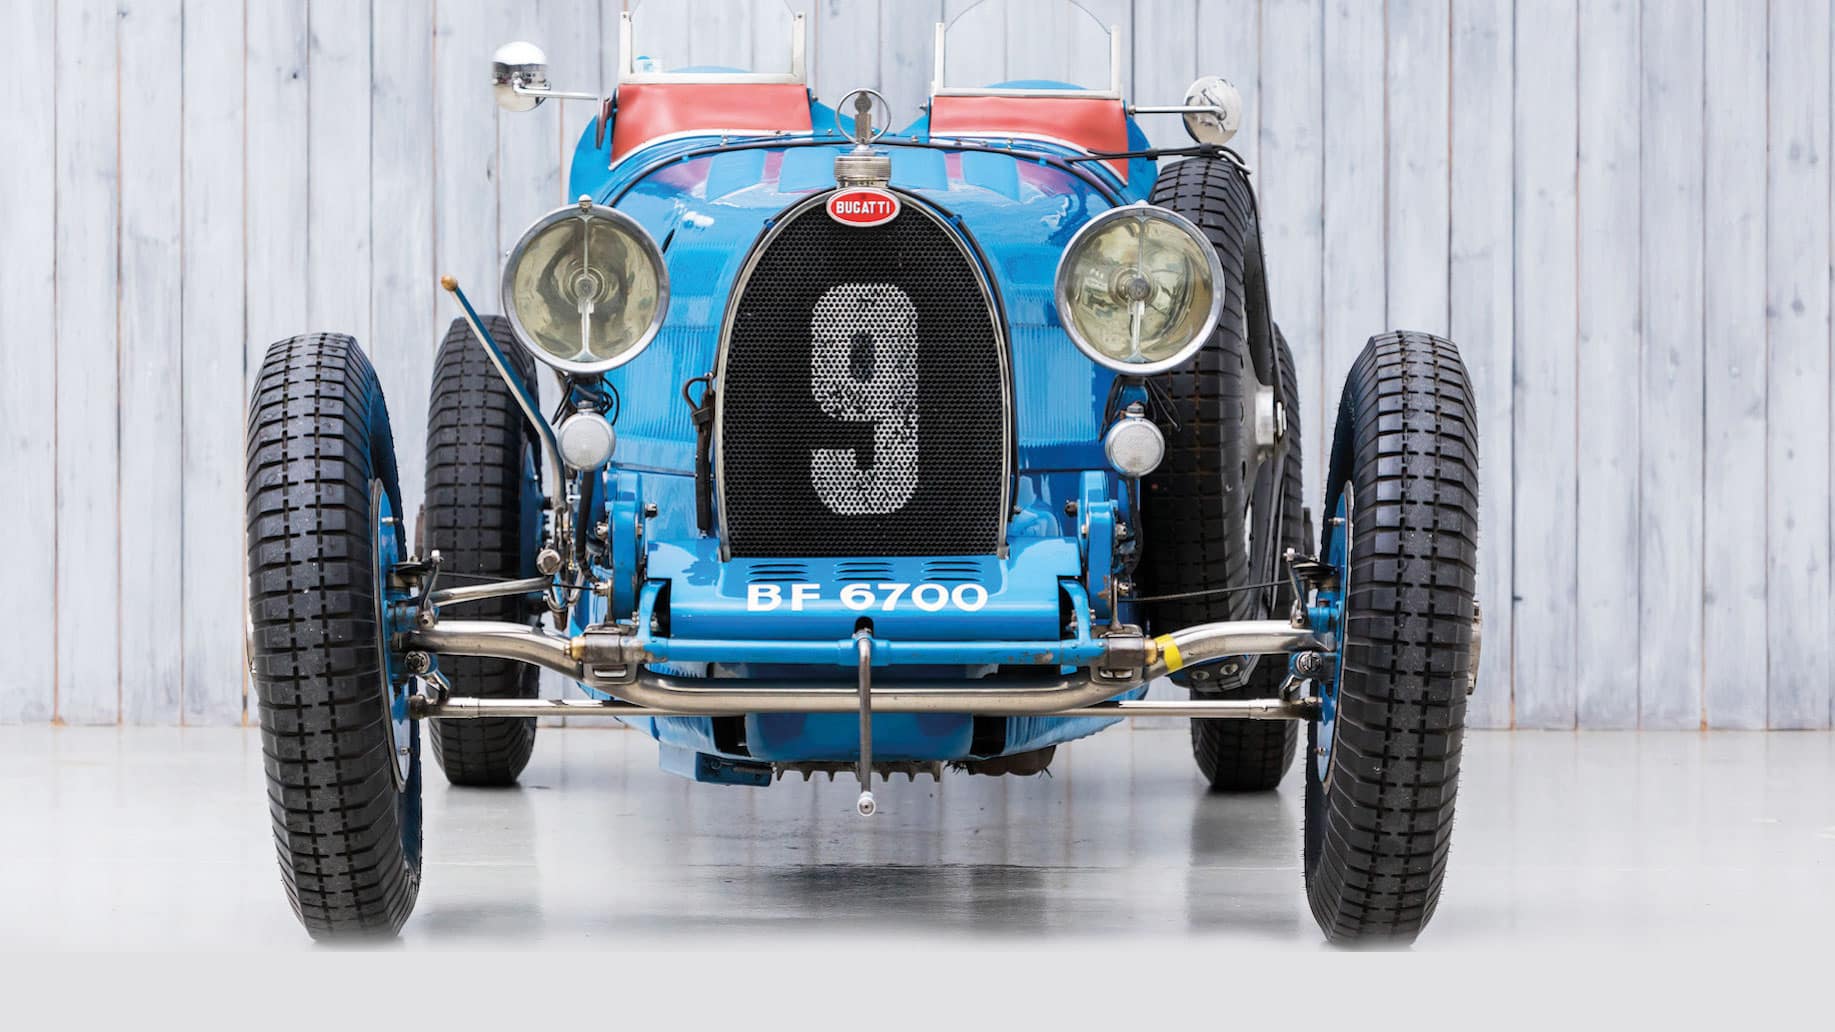 1926 Bugatti Type 35 grand prix